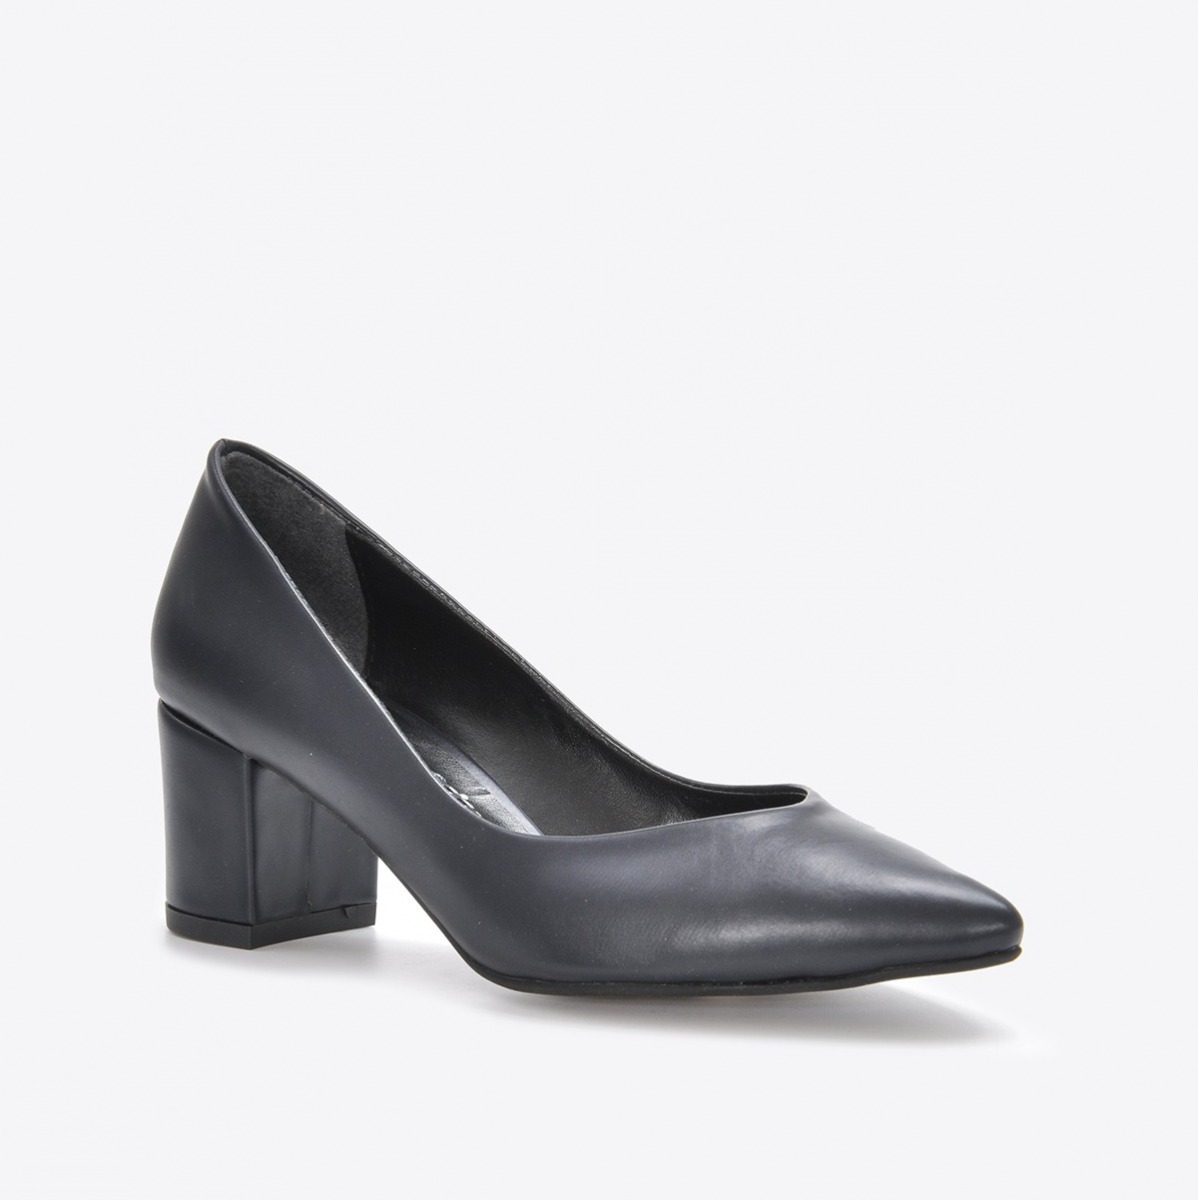 Flo Kadın  Lacivert Klasik Topuklu Ayakkabı VZN21-040Y. 1